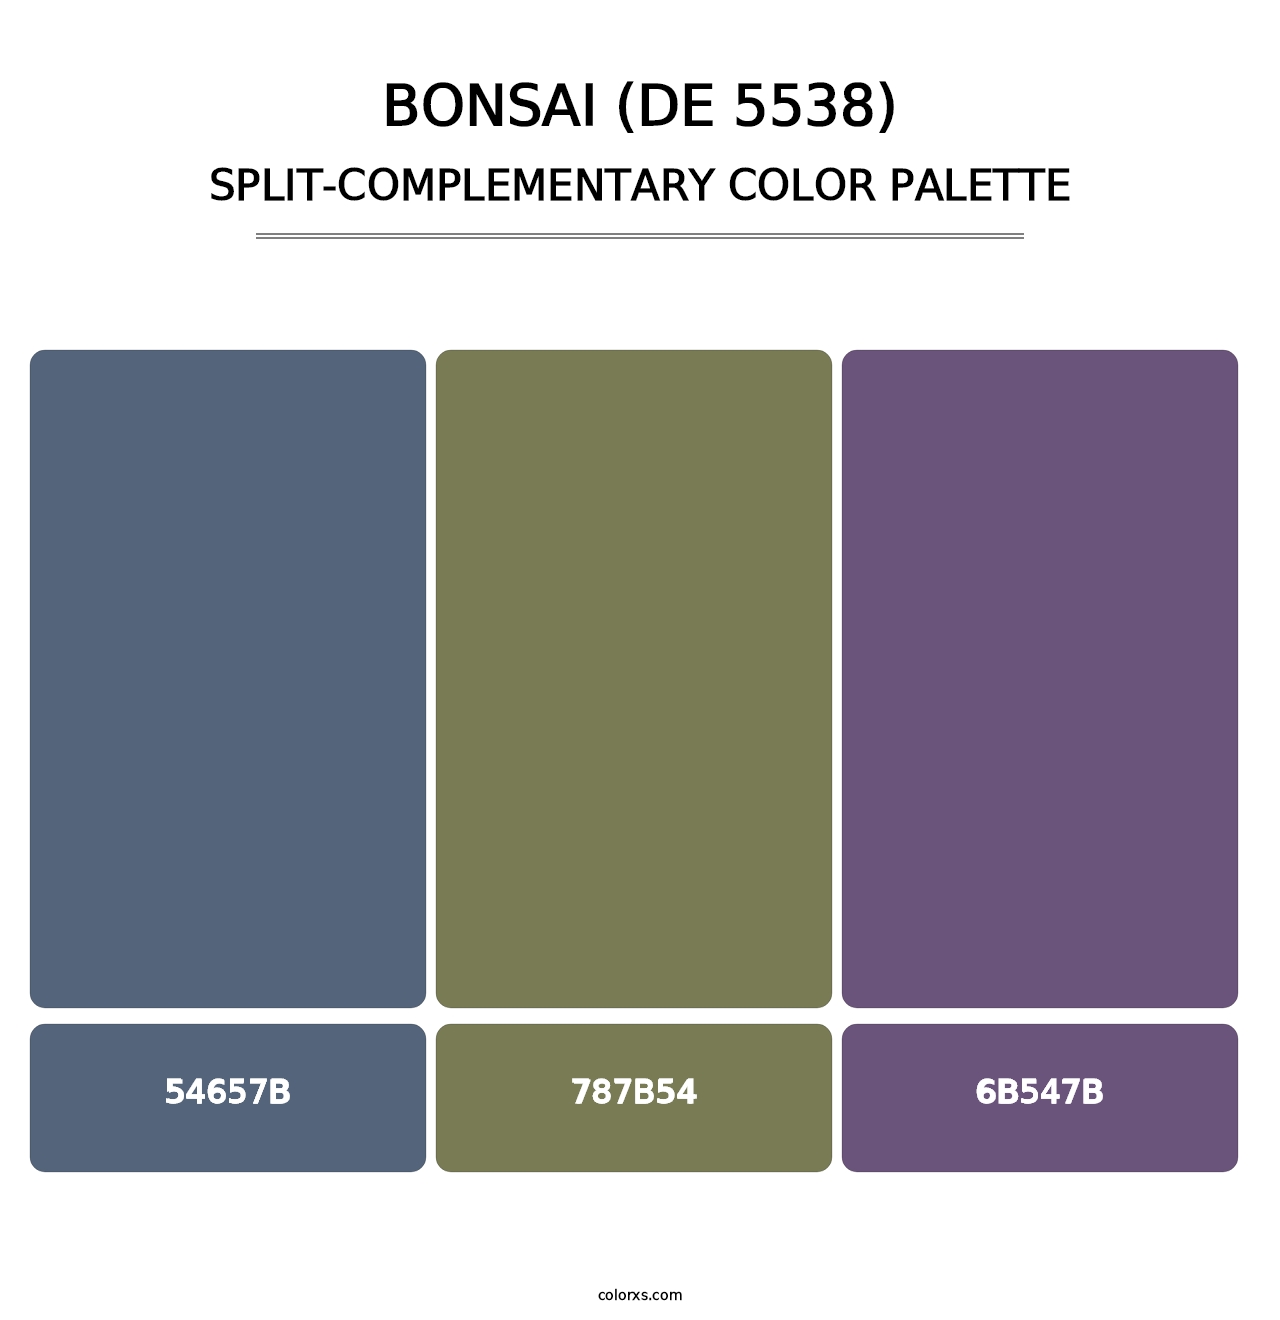 Bonsai (DE 5538) - Split-Complementary Color Palette